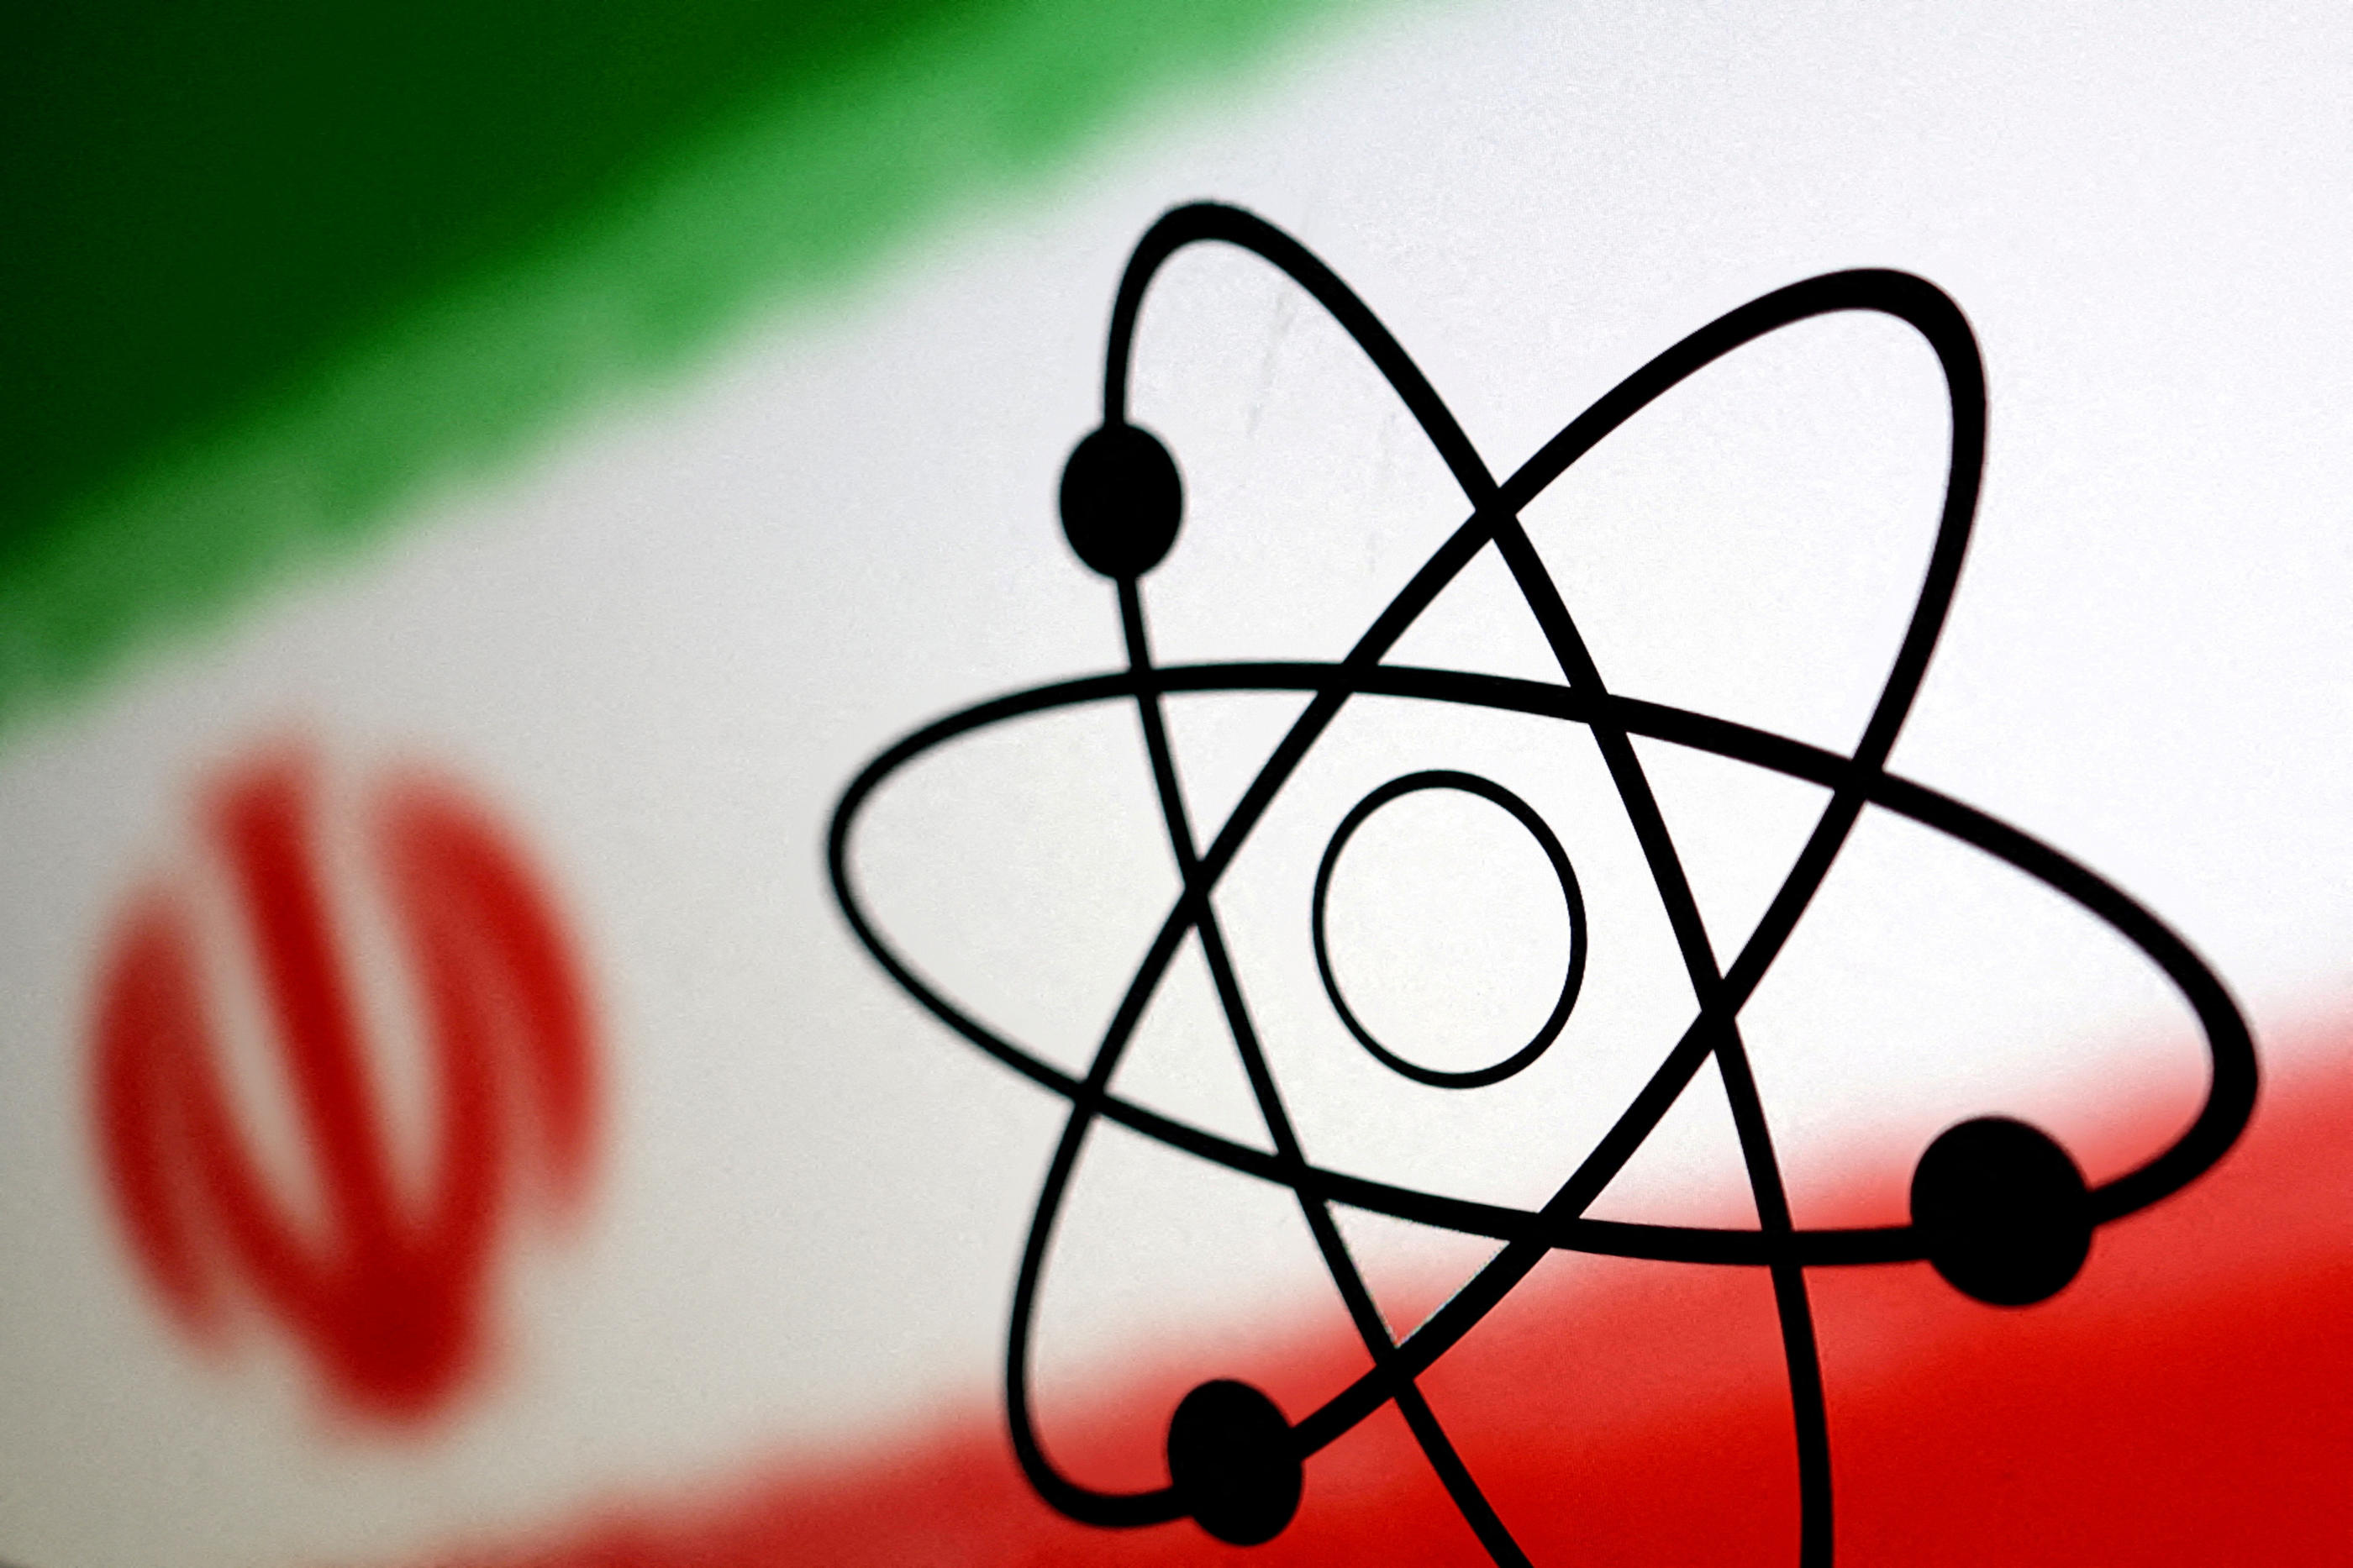 Selon un document de l’Agence internationale de l’énergie atomique (AIEA) publié en février, l’Iran a fortement augmenté ces derniers mois son stock d’uranium enrichi. Reuters/Dado Ruvic